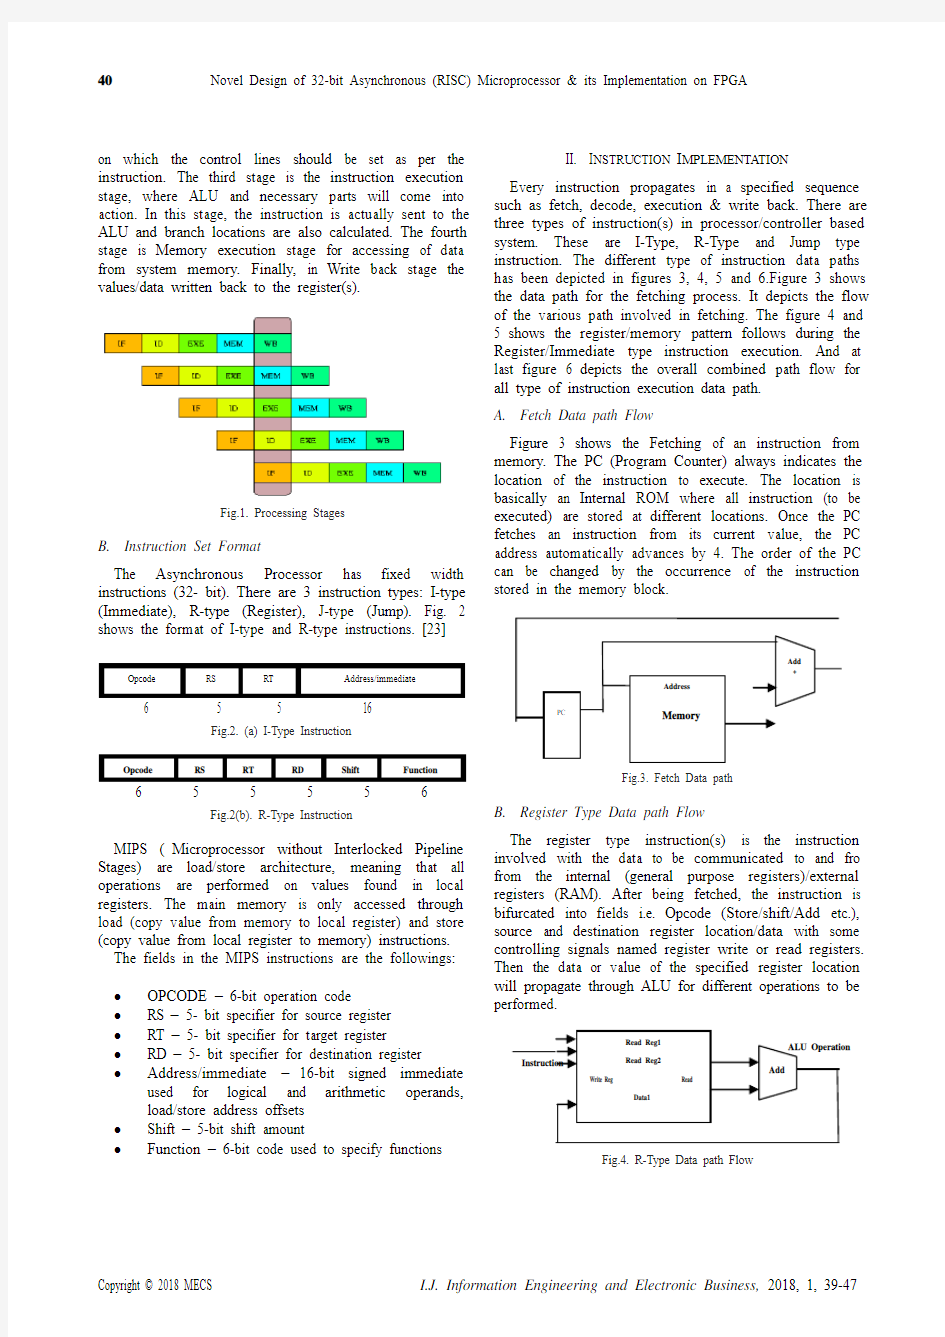 32位异步(RISC)微处理器的新设计及其在FPGA上的应用(IJIEEB-V10-N1-6)